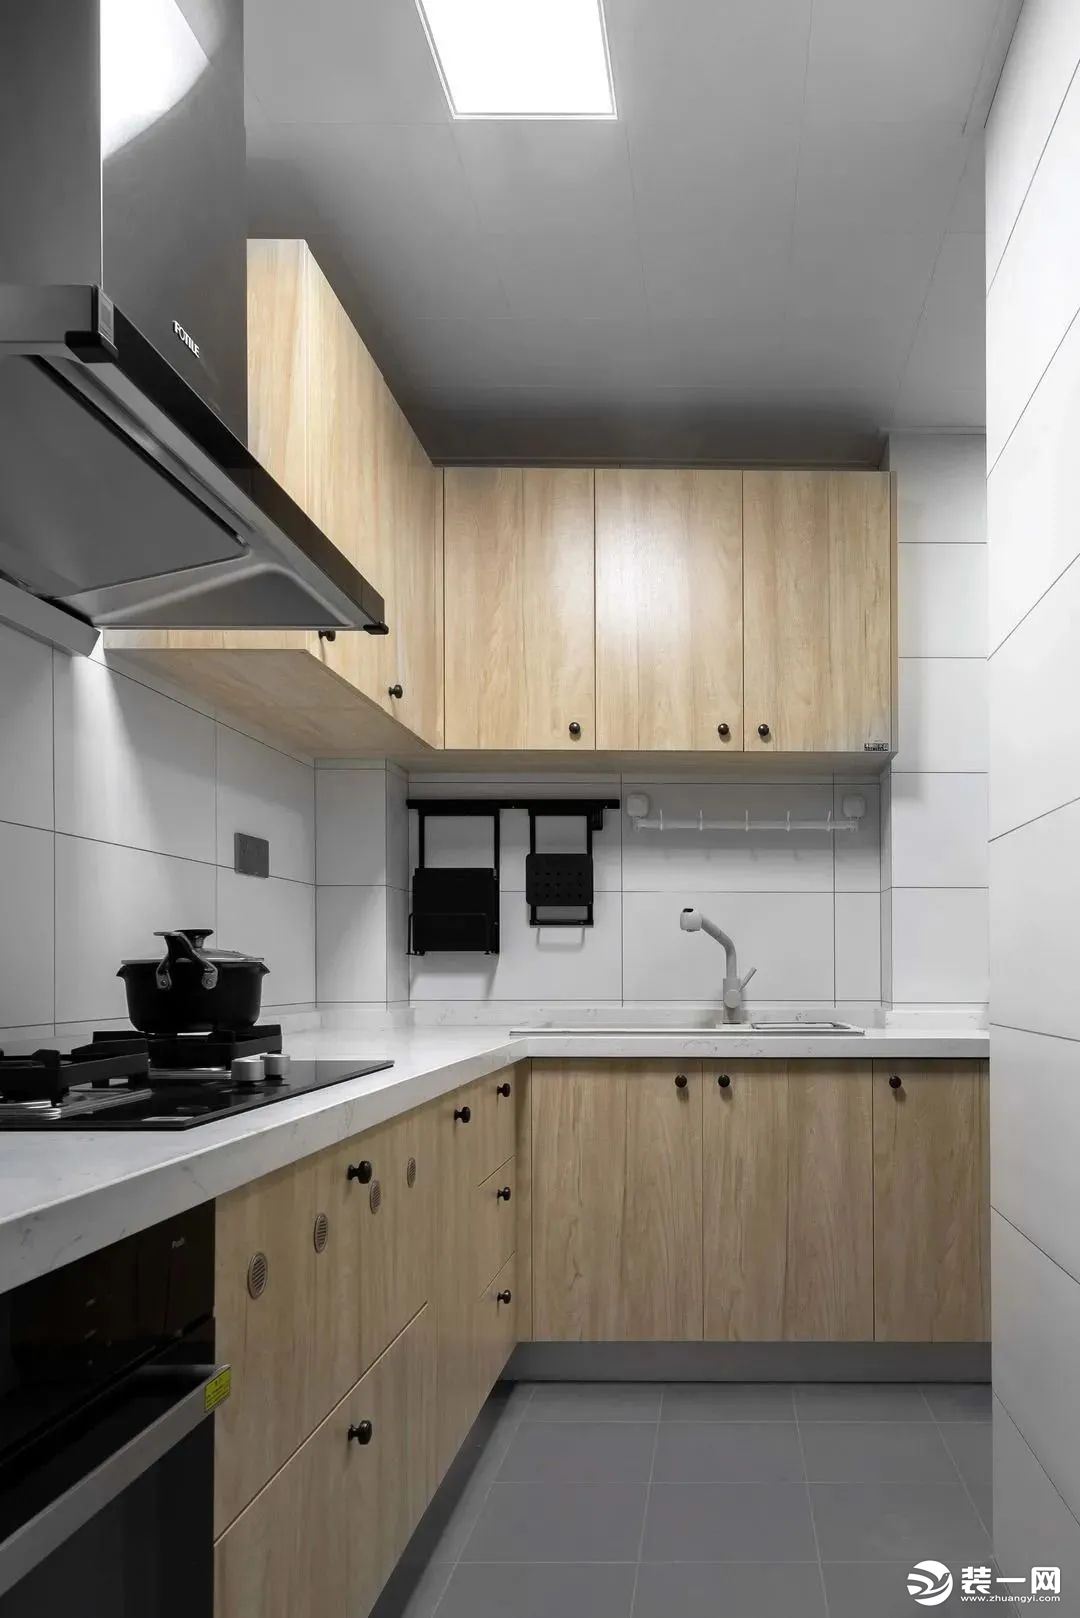 厨房采用L型设计，操作台非常的宽松。橱柜和吊柜设计，为厨房提供了足够的收纳空间。值得一提的是厨房插座